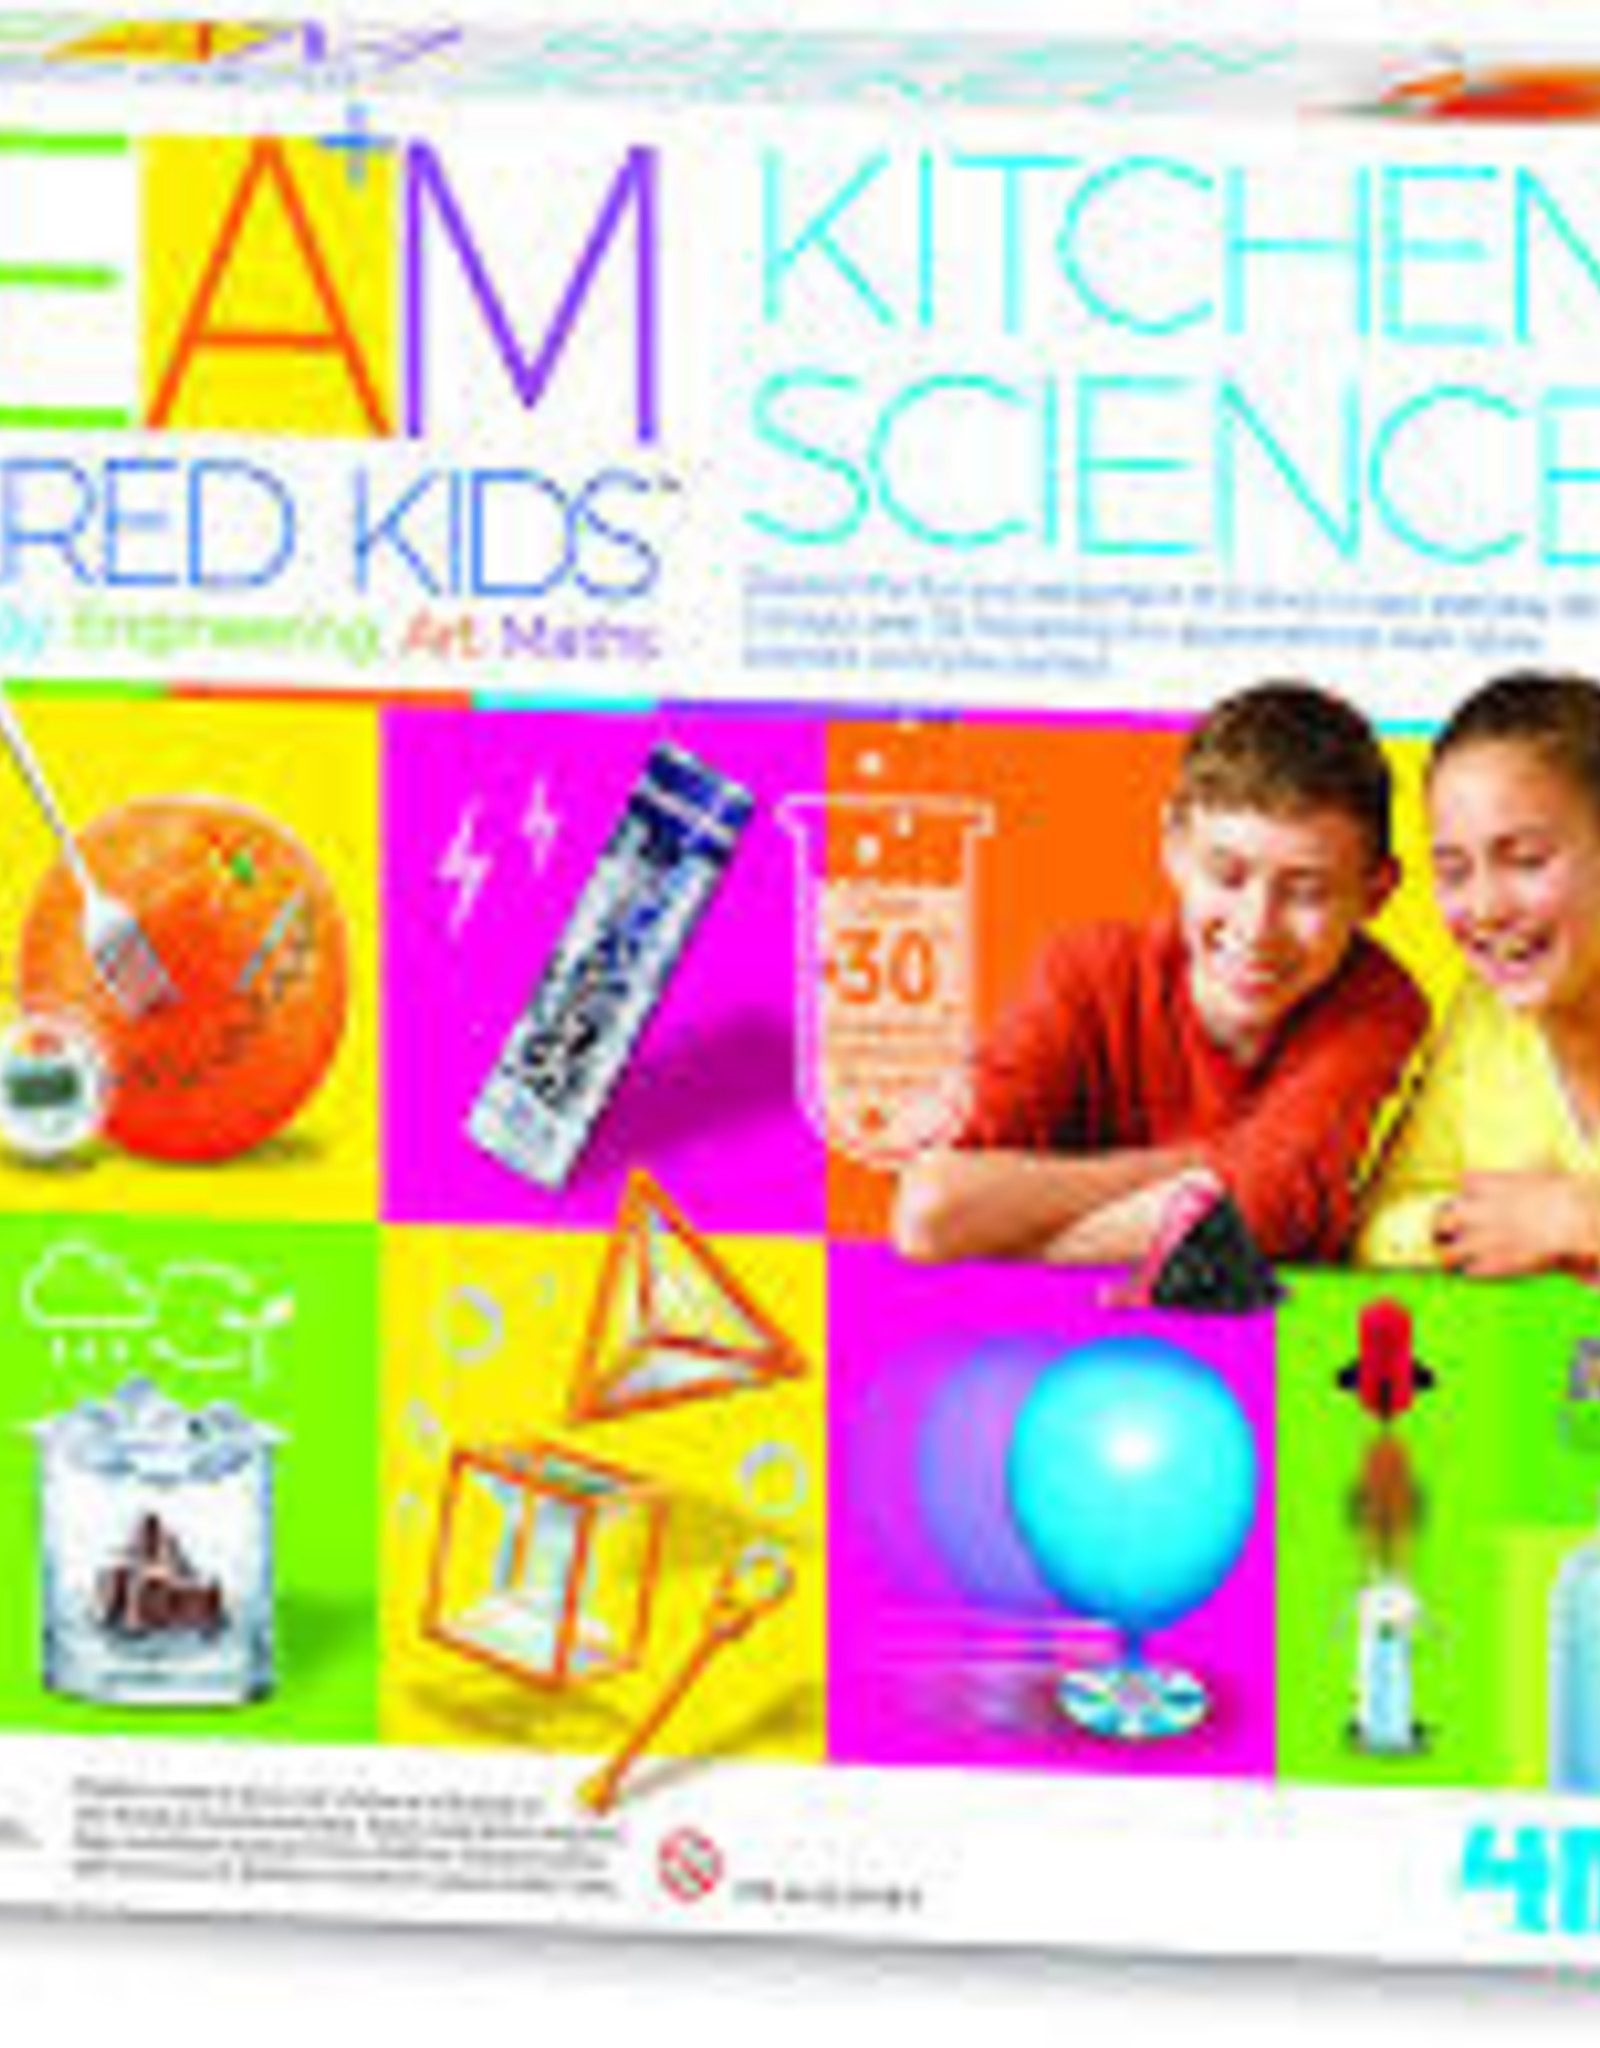 4M Kitchen Science-STEAM Kids